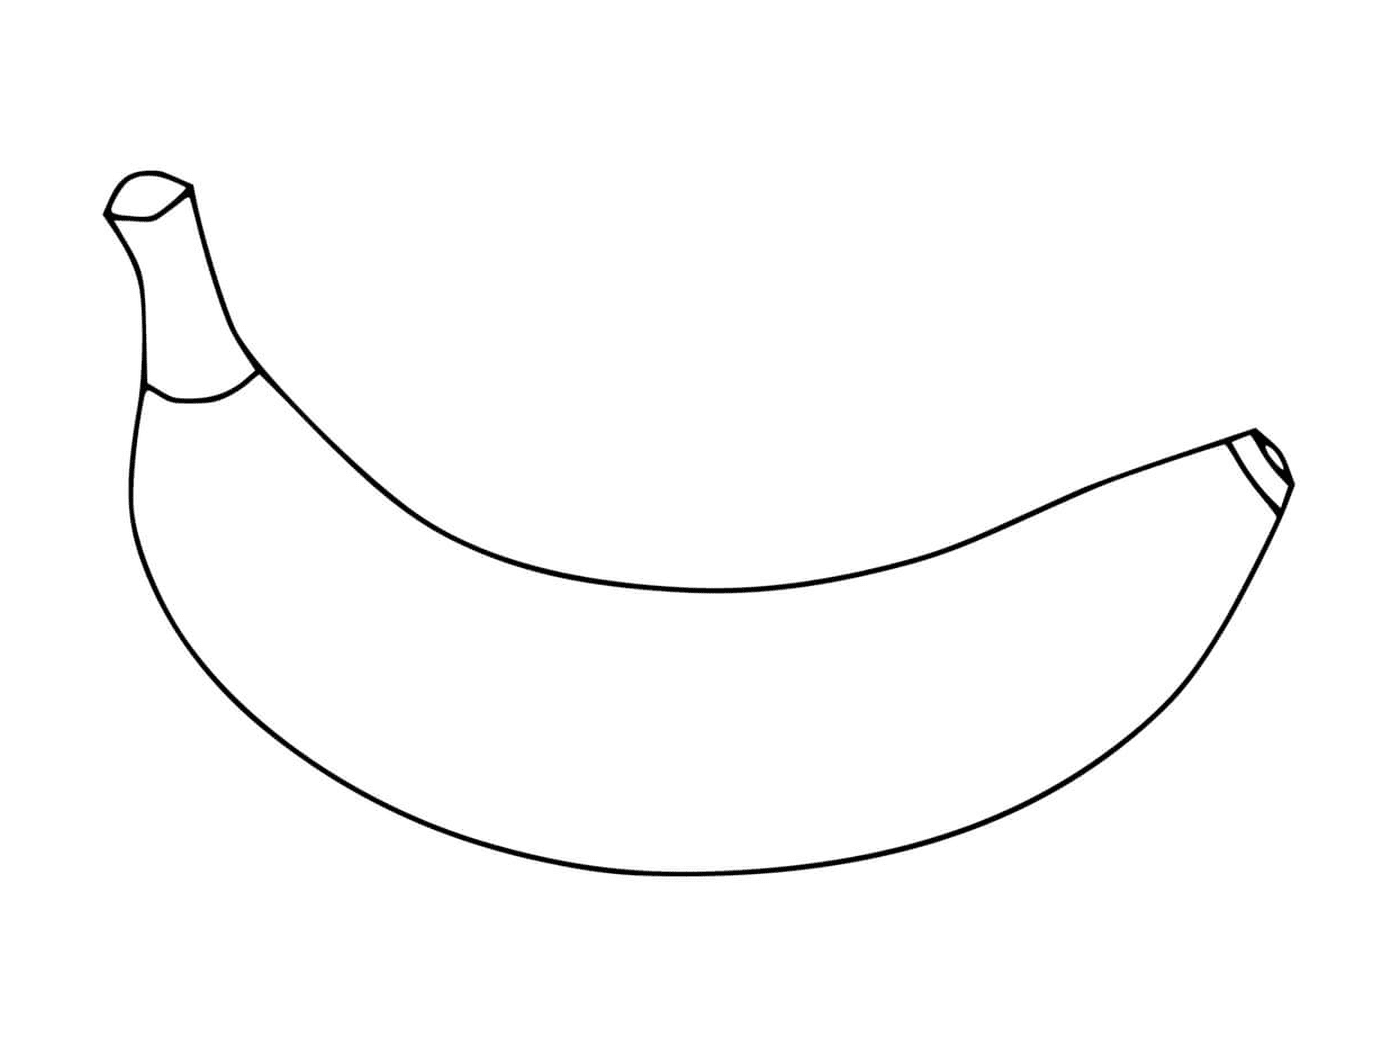   Une image d'une banane 